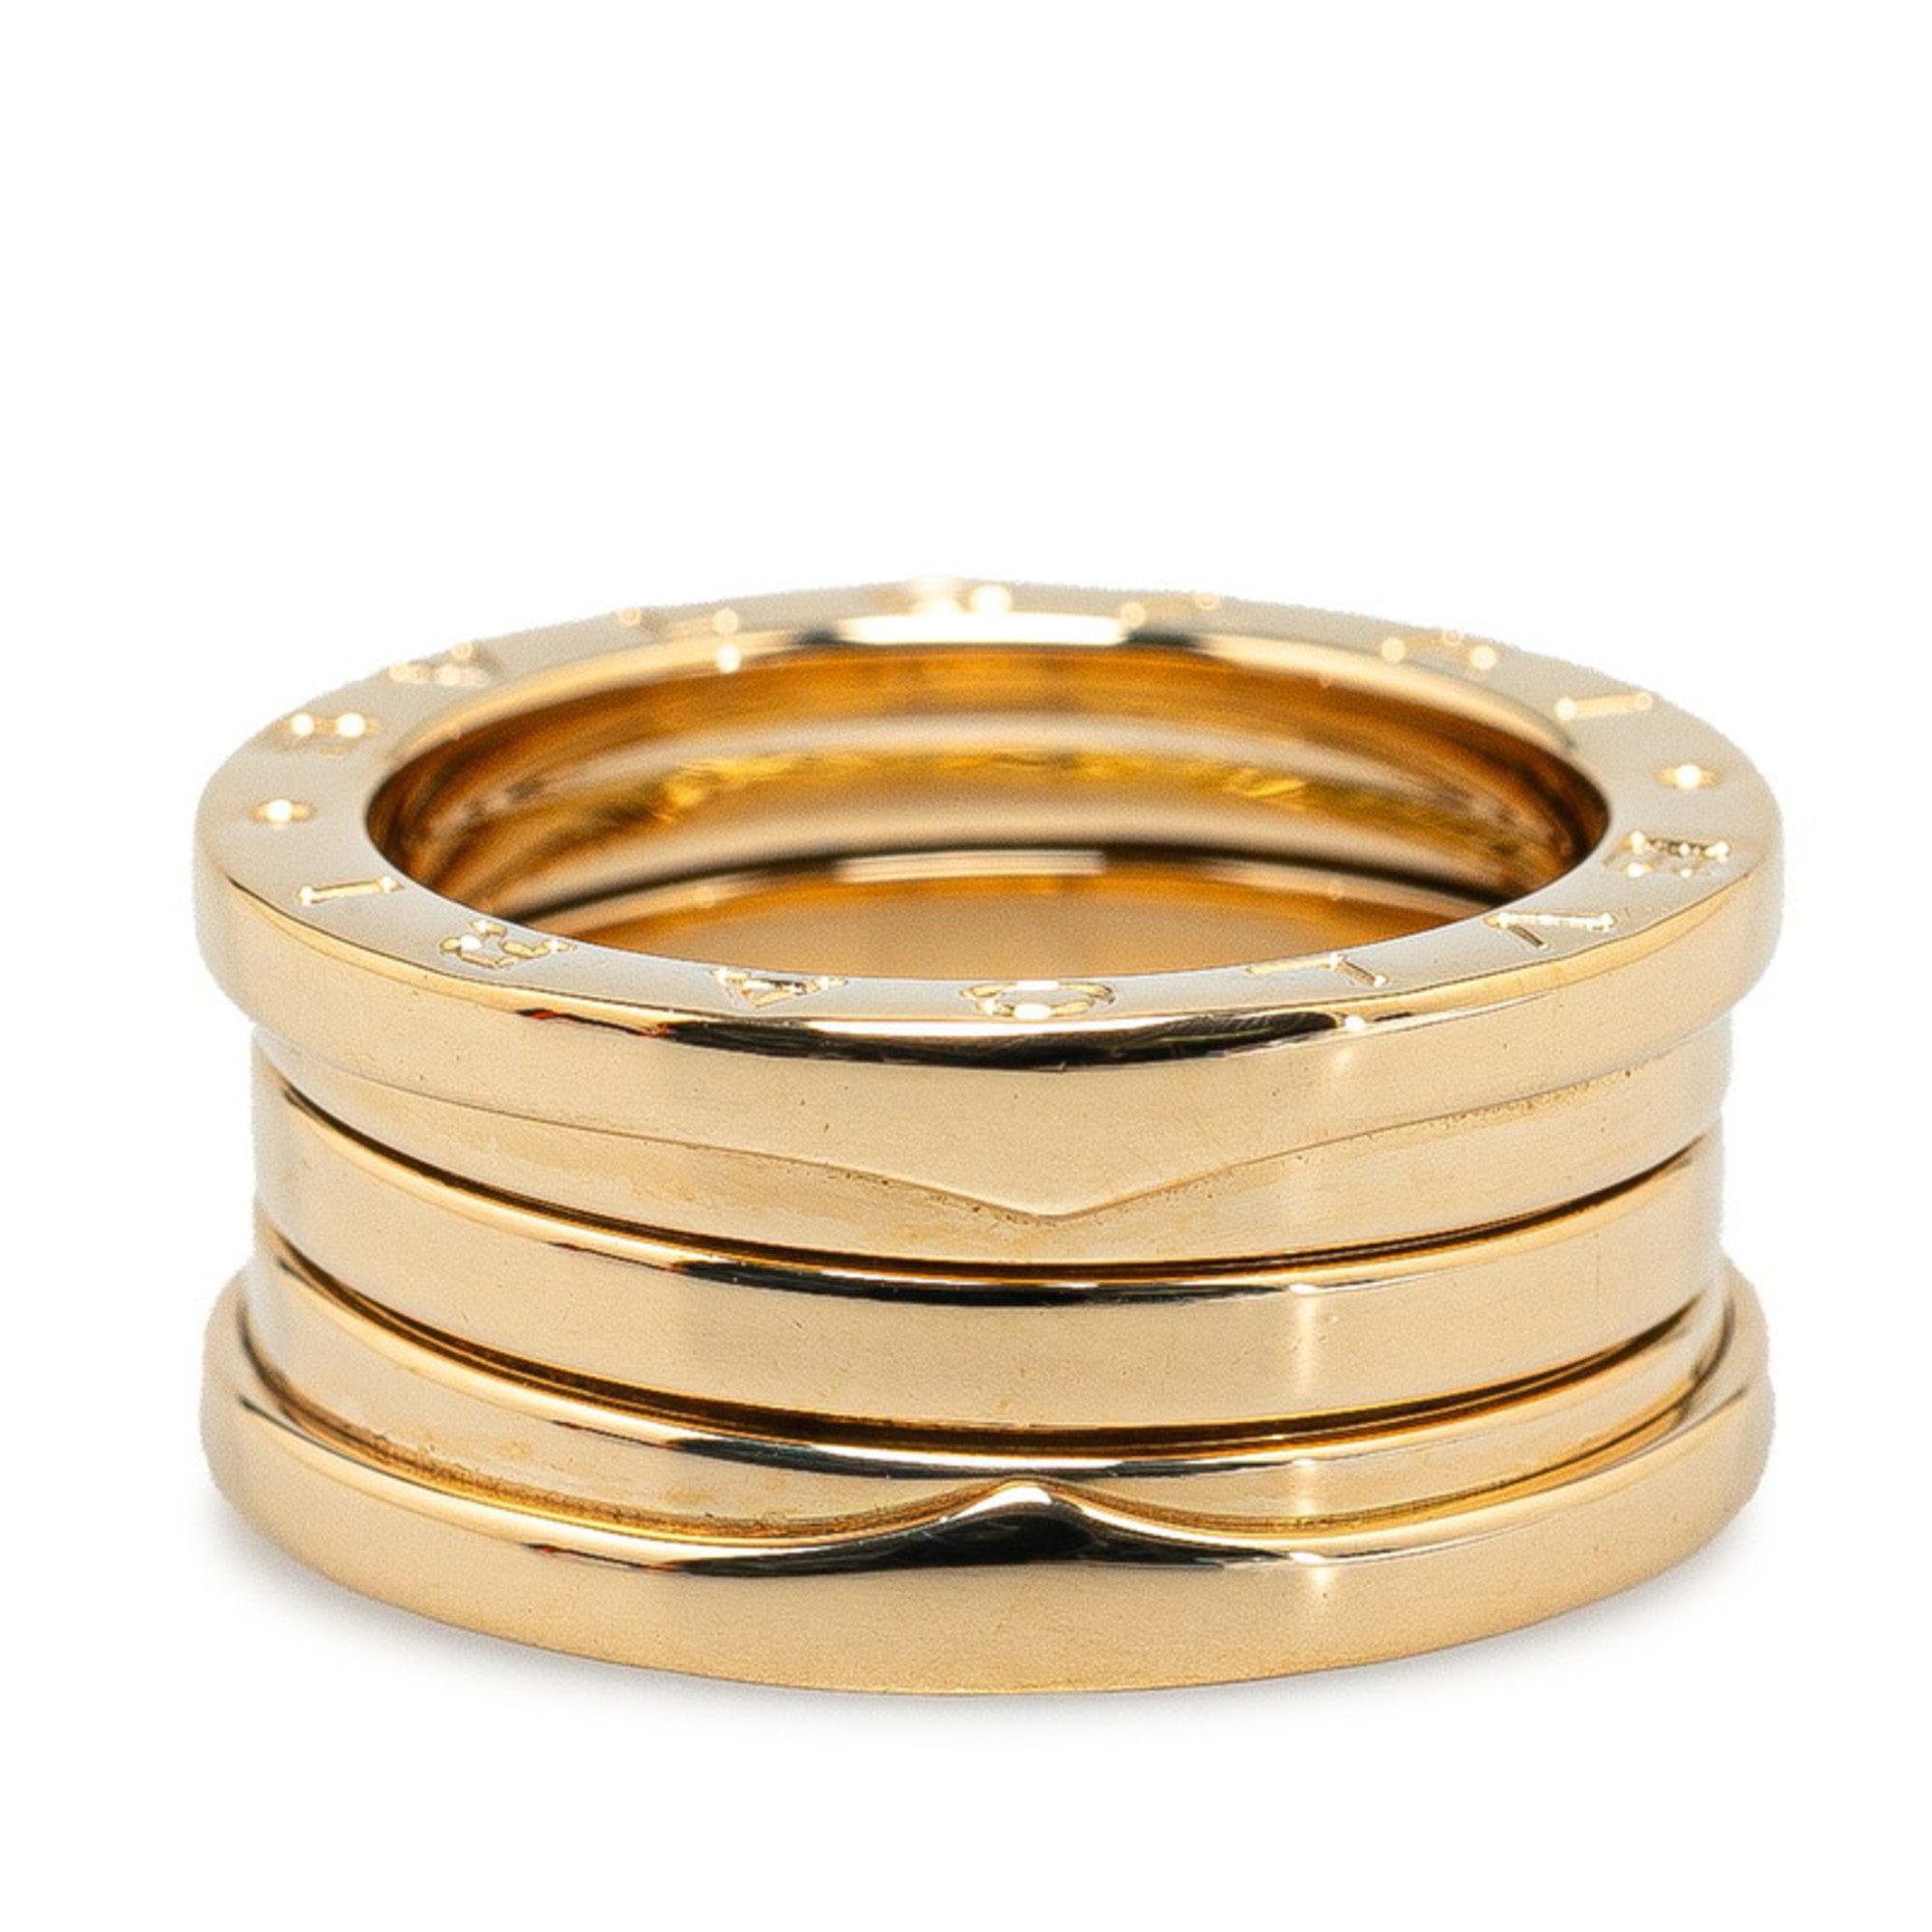 BVLGARI B.zero1 4-band ring #52 K18YG Yellow gold for women